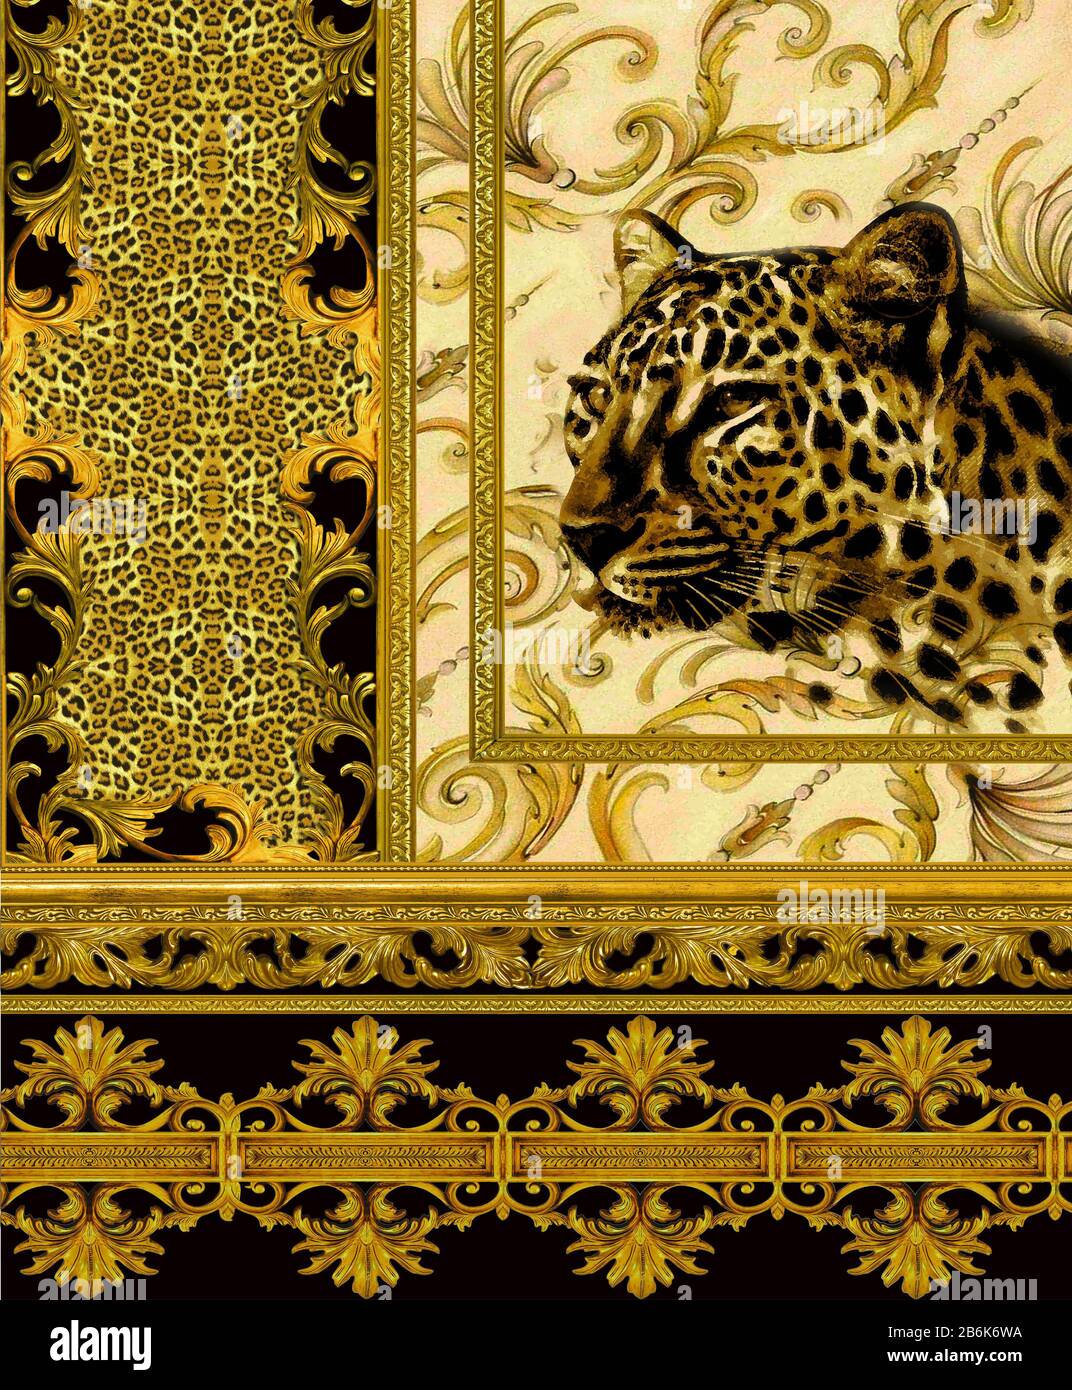 Leopardenhauttextur und Geparschkopf mit goldenen Rändern, Paisley-Muster mit Blumenmuster. Luxuriöser Baroque Hintergrund. - Abbildung. Stockfoto